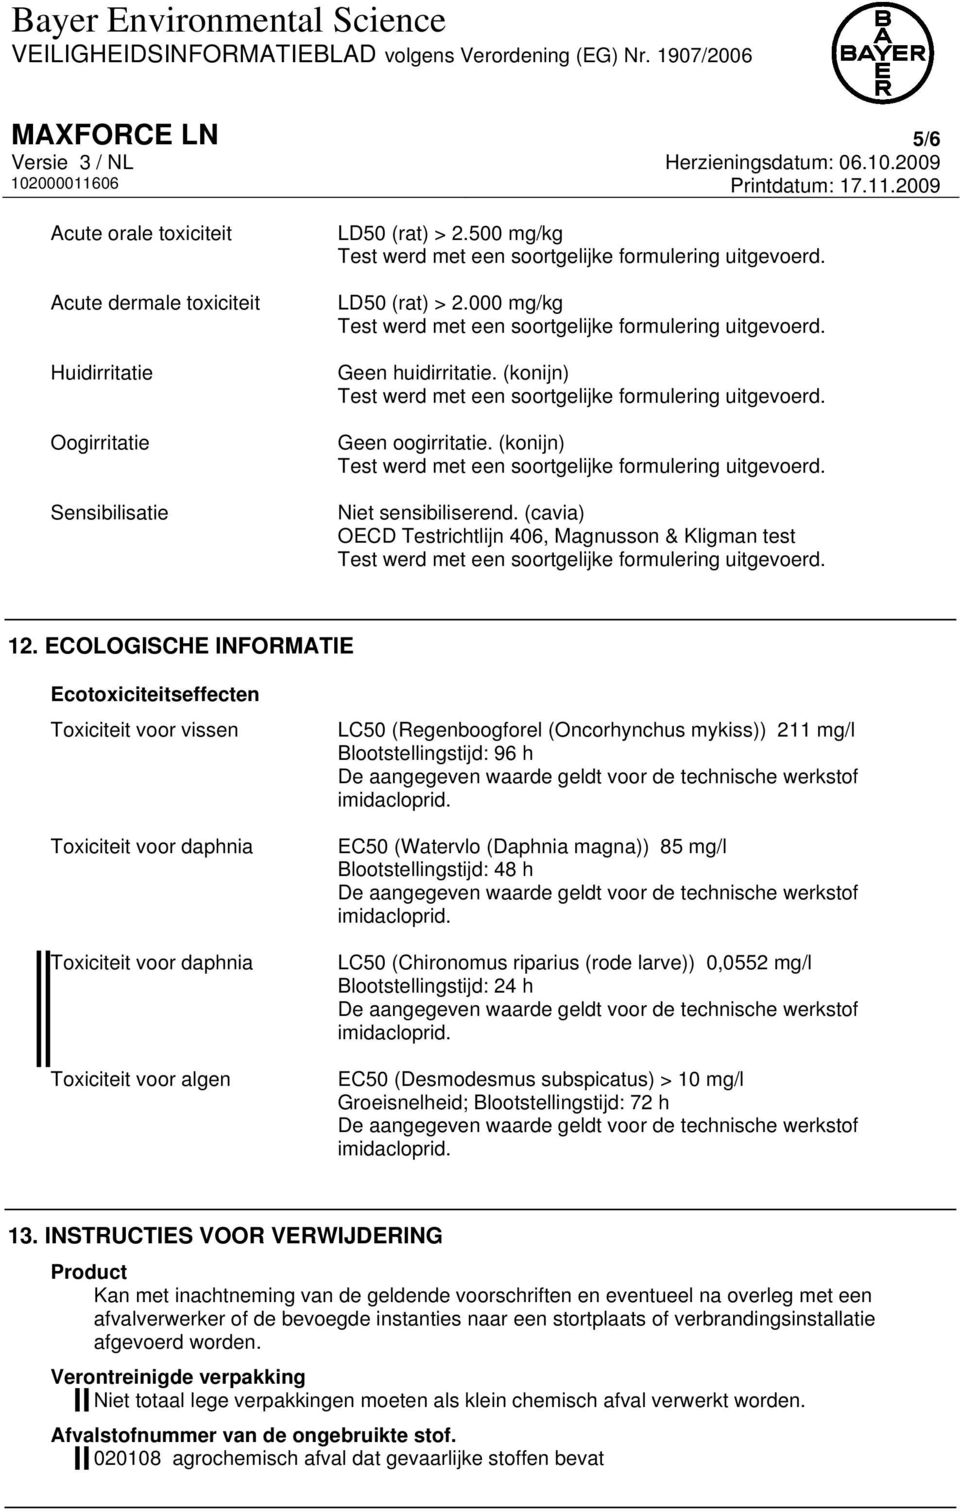 ECOLOGISCHE INFORMATIE Ecotoxiciteitseffecten Toxiciteit voor vissen Toxiciteit voor daphnia Toxiciteit voor daphnia Toxiciteit voor algen LC50 (Regenboogforel (Oncorhynchus mykiss)) 211 mg/l